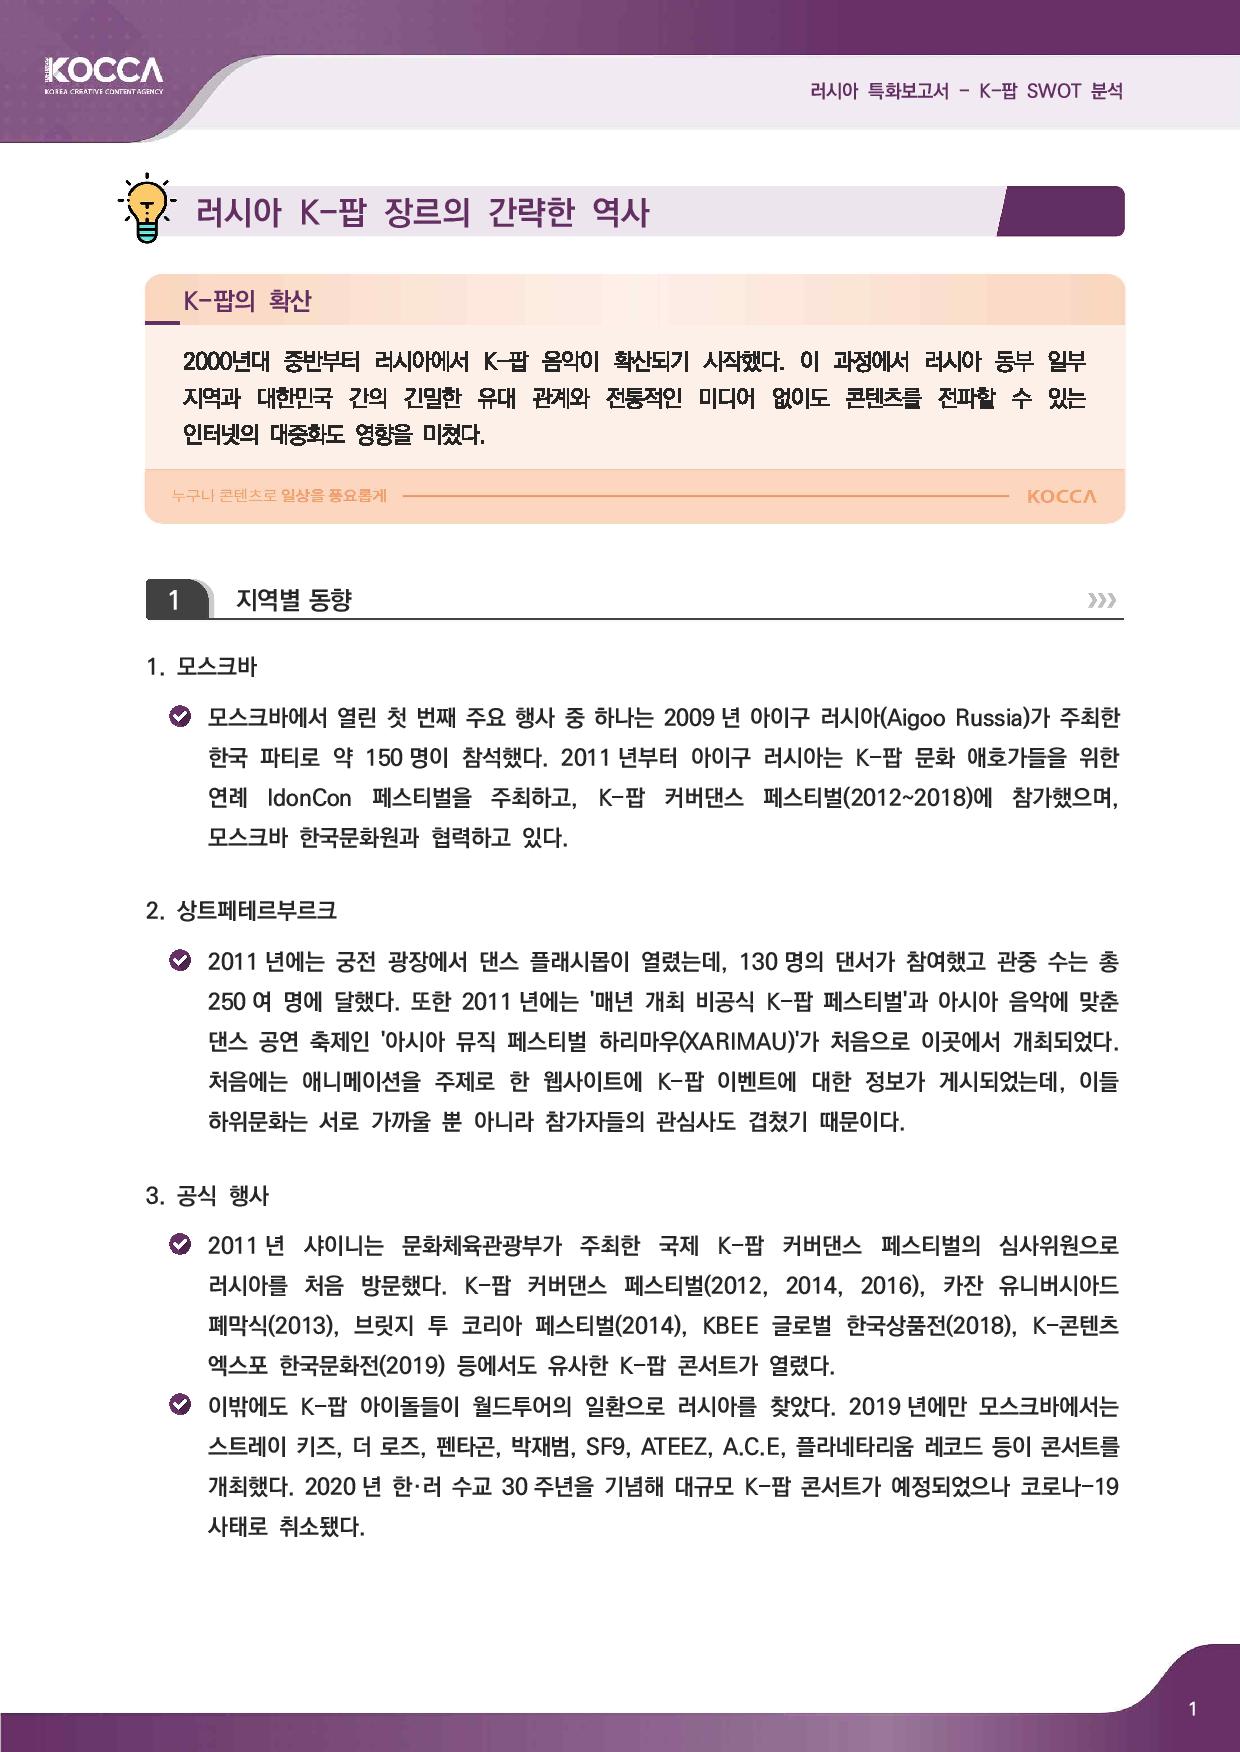 2. 러시아 특화보고서_K-pop SWOT 분석 (3)-page-003.jpg